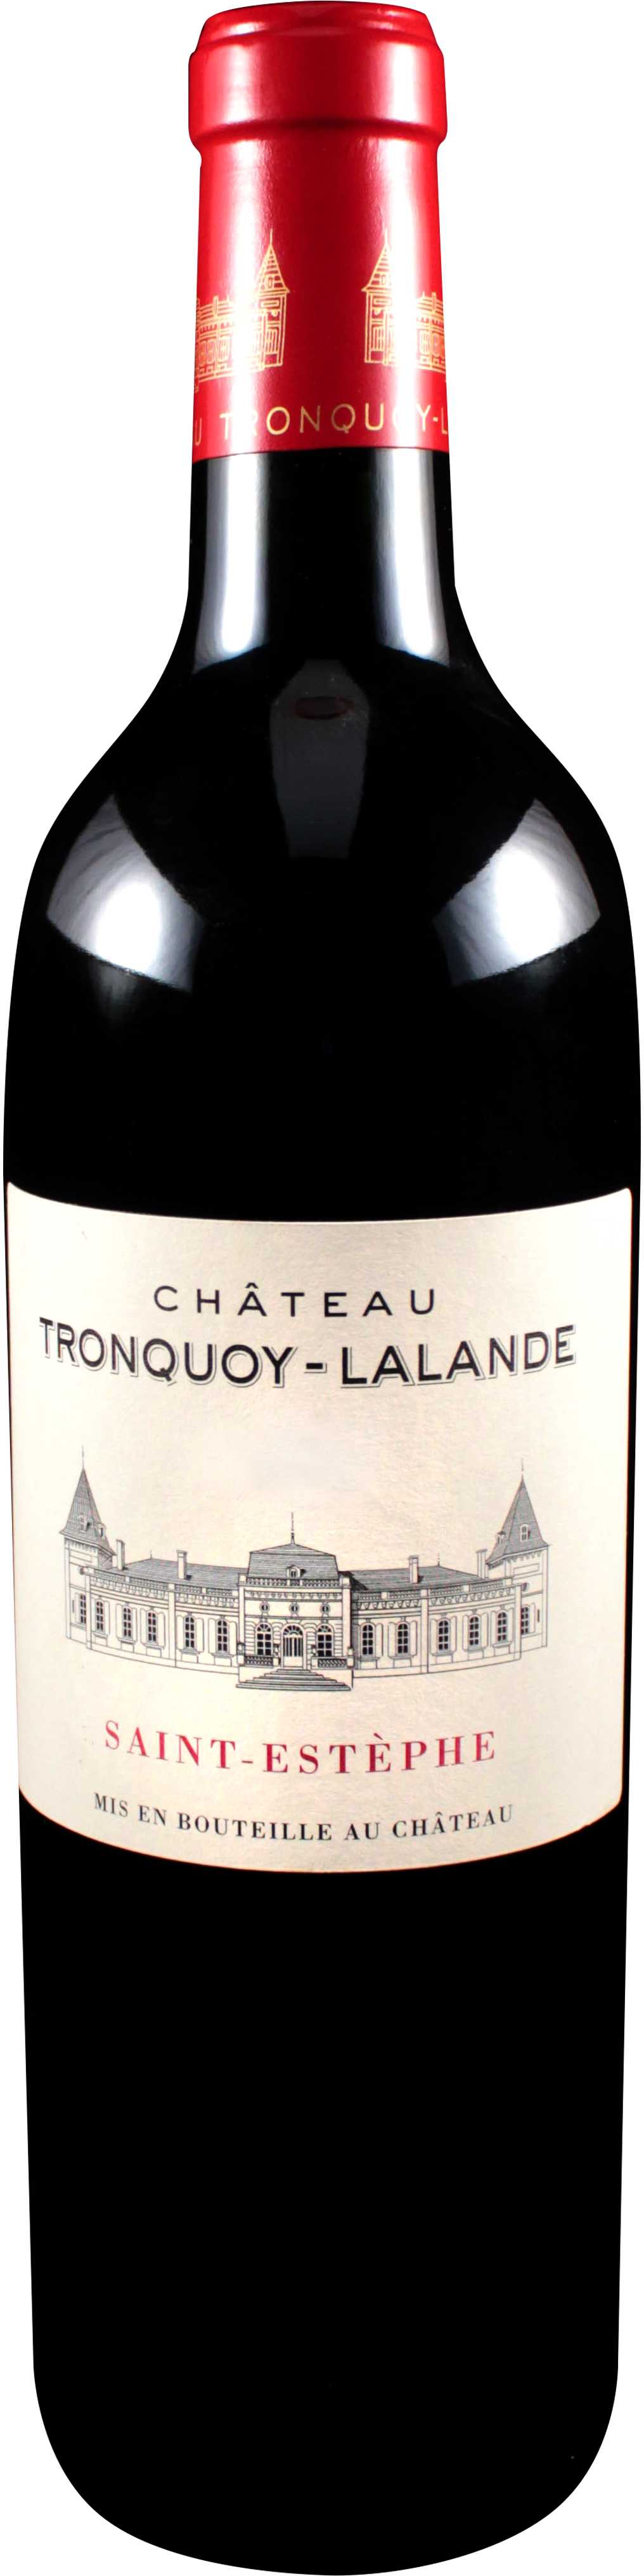 Bottle shot of 2009 Château Tronquoy Lalande, St Estèphe